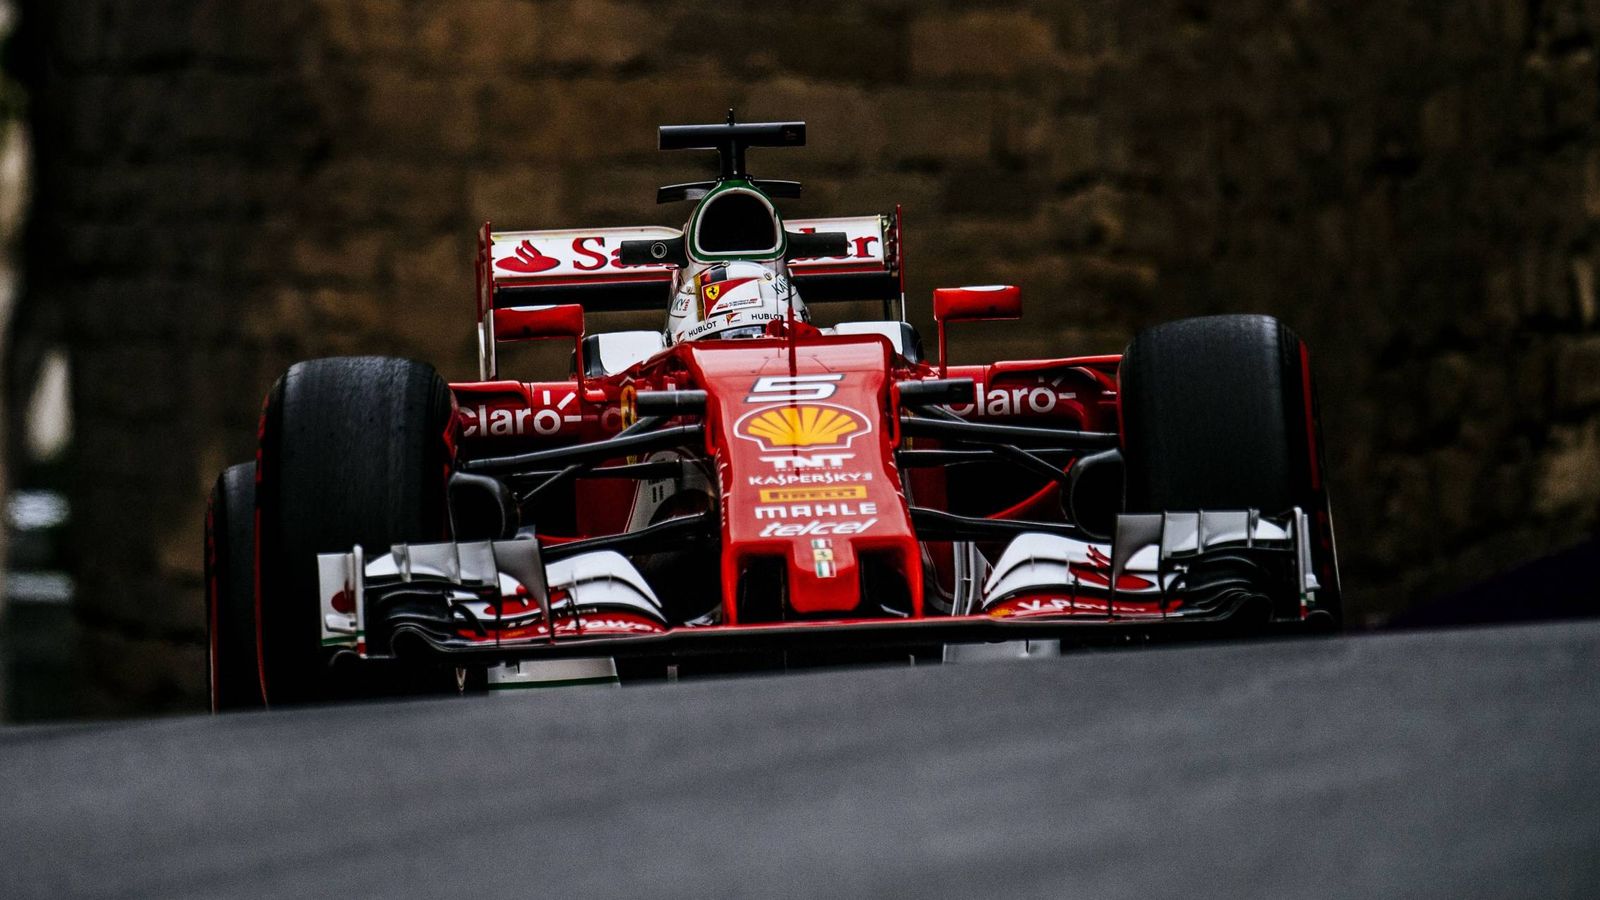 Foto: Sebastian Vettel por las calles de Bakú (Ferrari.com)